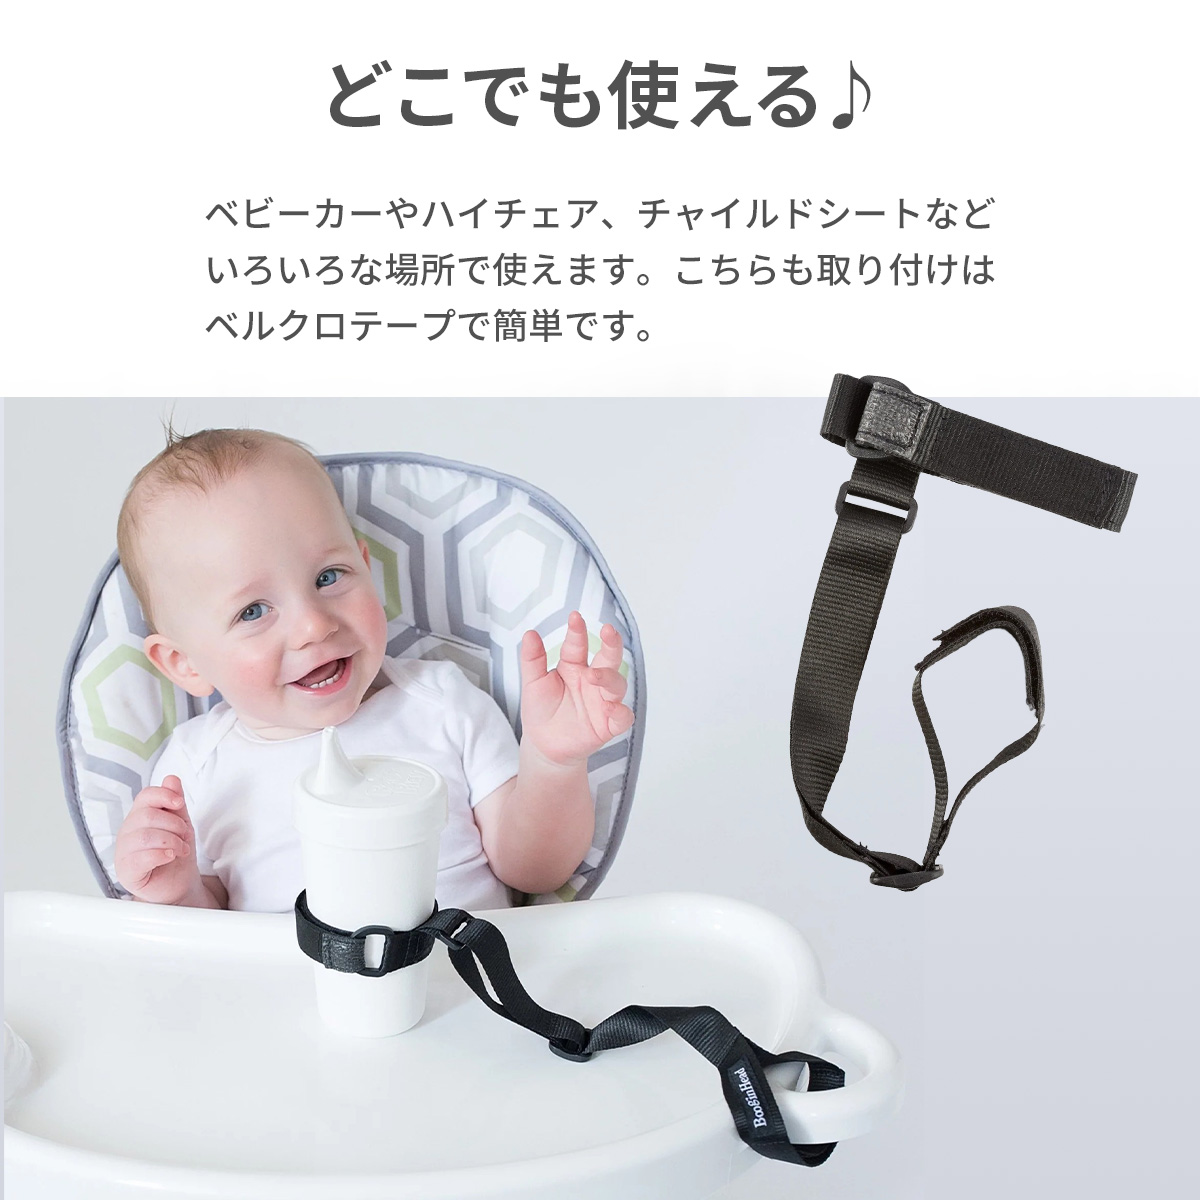 b- серебристый head держатель для бутылки модный кружка держатель младенец игрушка держатель игрушка коляска детский стул падение предотвращение мульти- держатель 